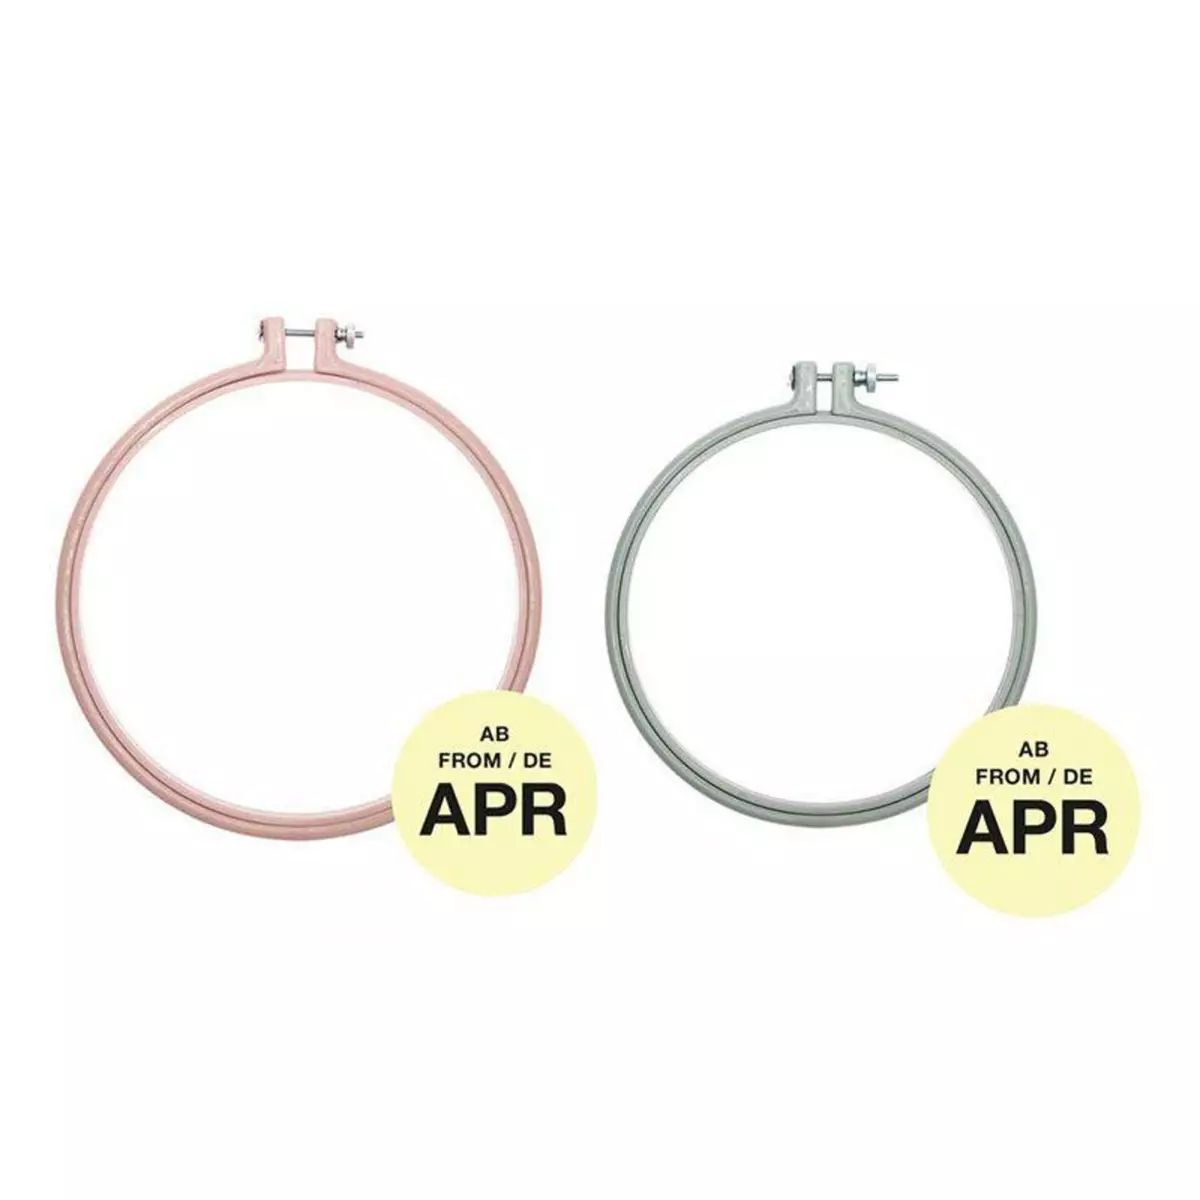 RICO DESIGN 2 anneaux de broderie - rose poudré 17,8 cm + menthe 15,2 cm